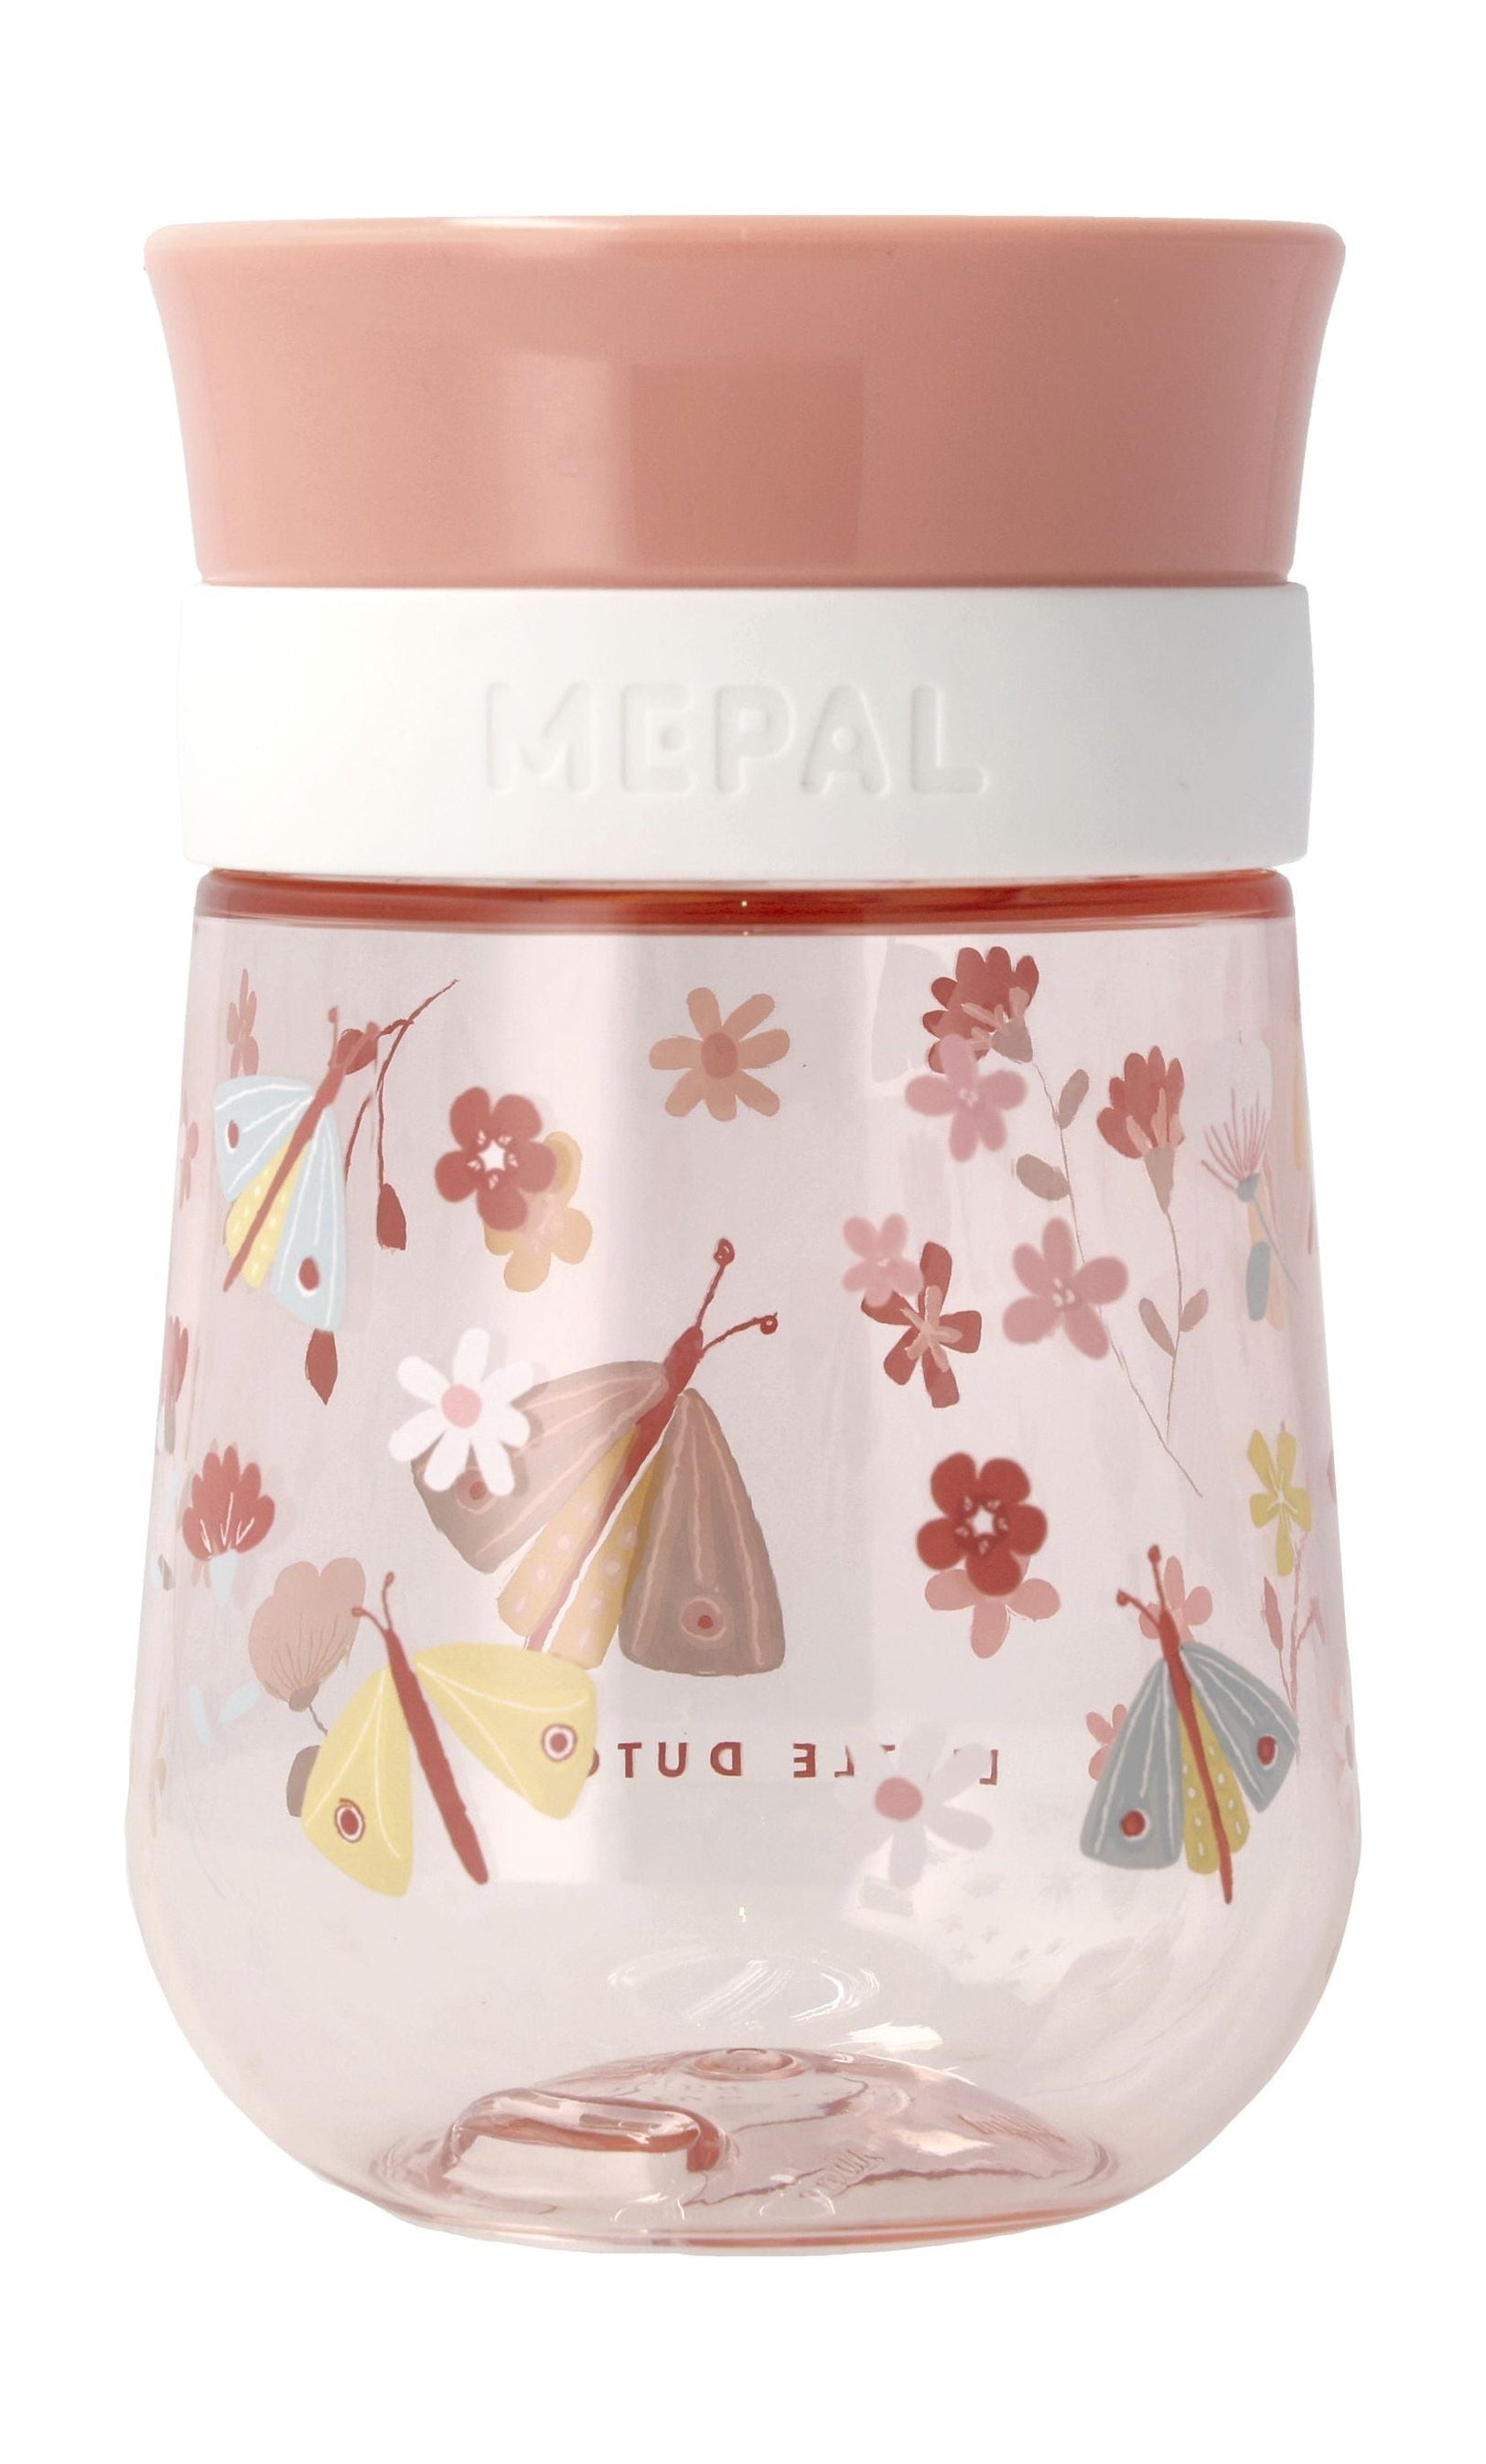 Mepal Mio Non Drip Baby Cup, kukat ja perhoset